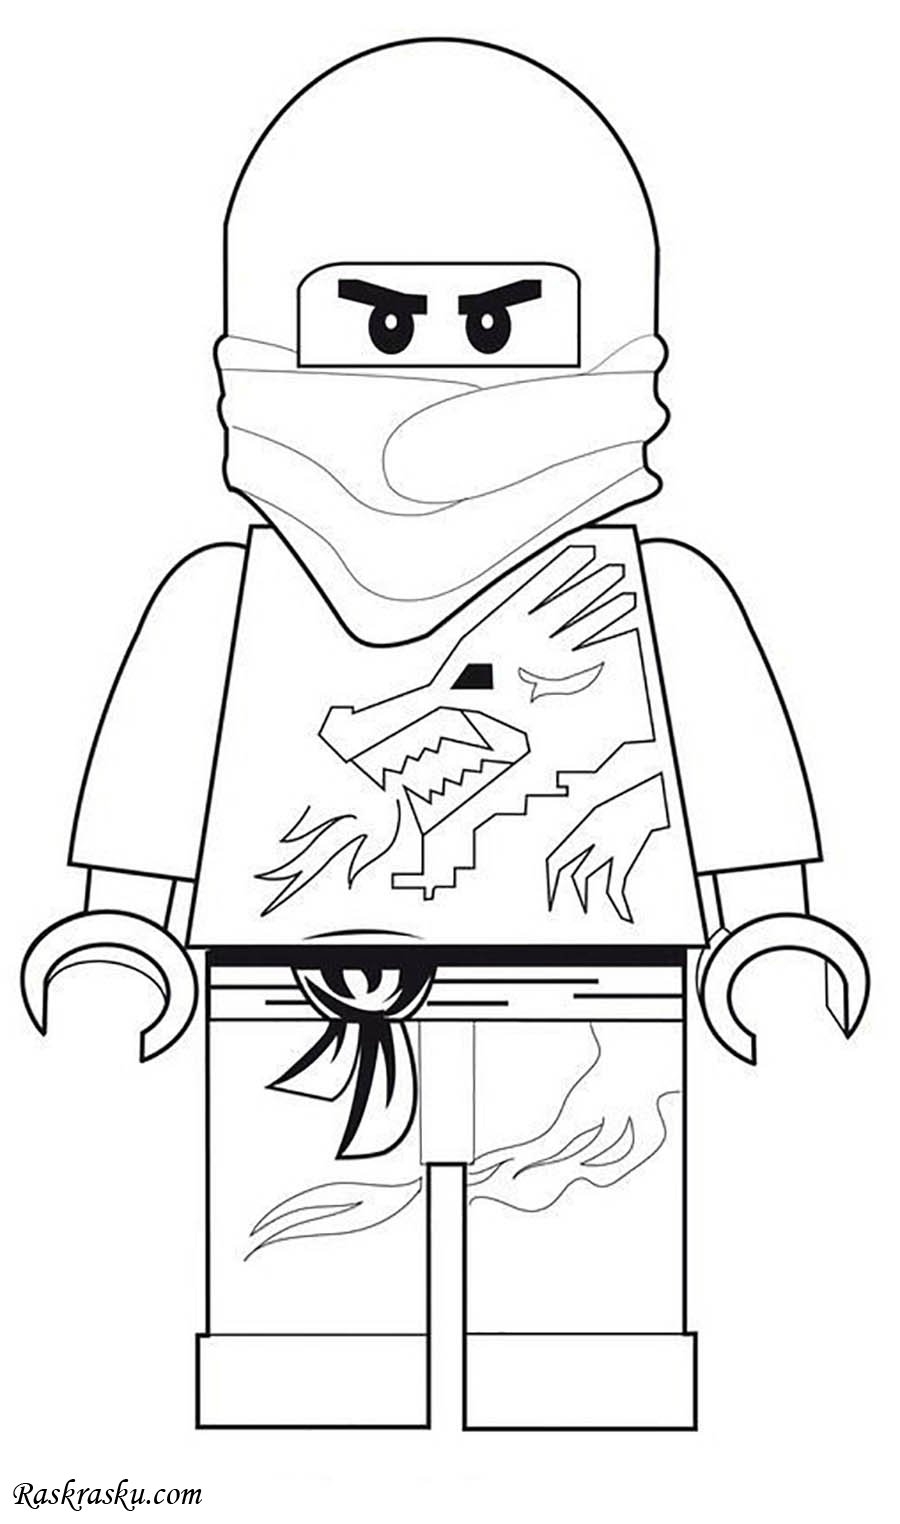 Раскраски LEGO Ниндзяго распечатать на А4